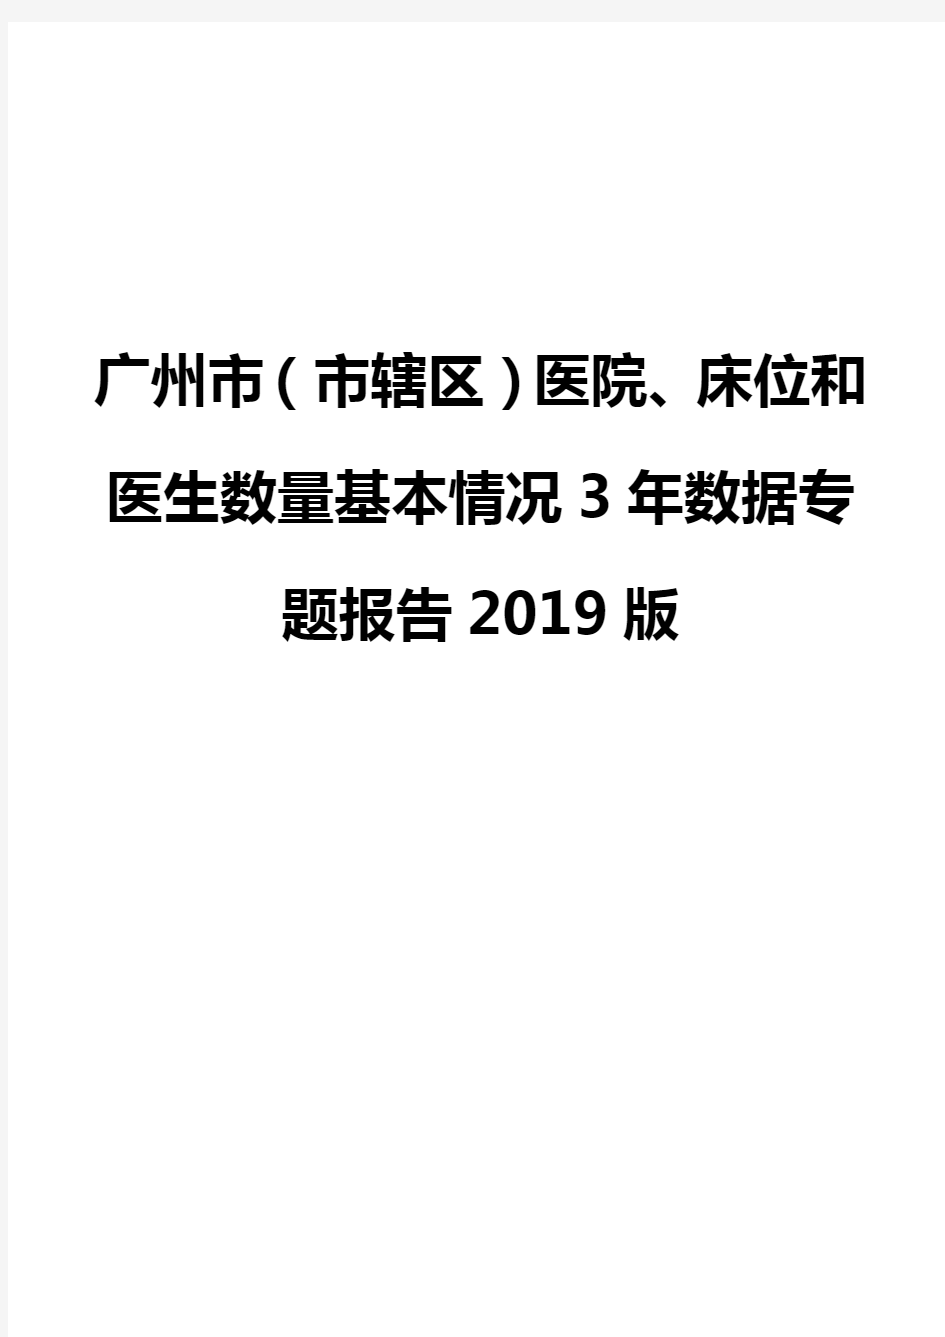 广州市(市辖区)医院、床位和医生数量基本情况3年数据专题报告2019版